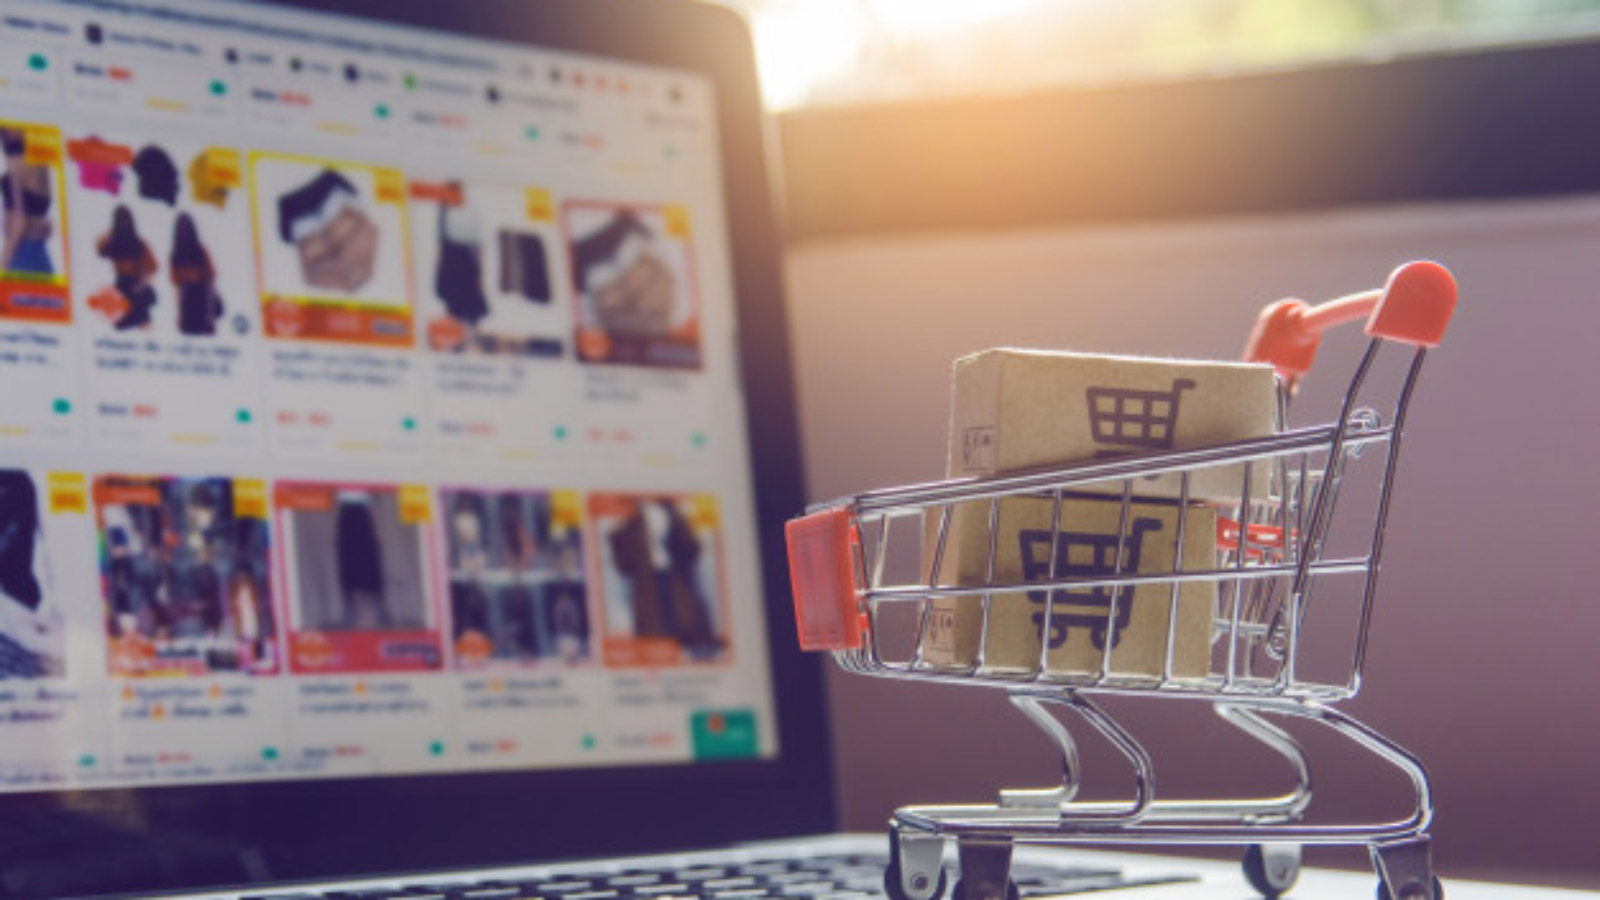 Analiza trendów e-commerce w pierwszym półroczu 2020